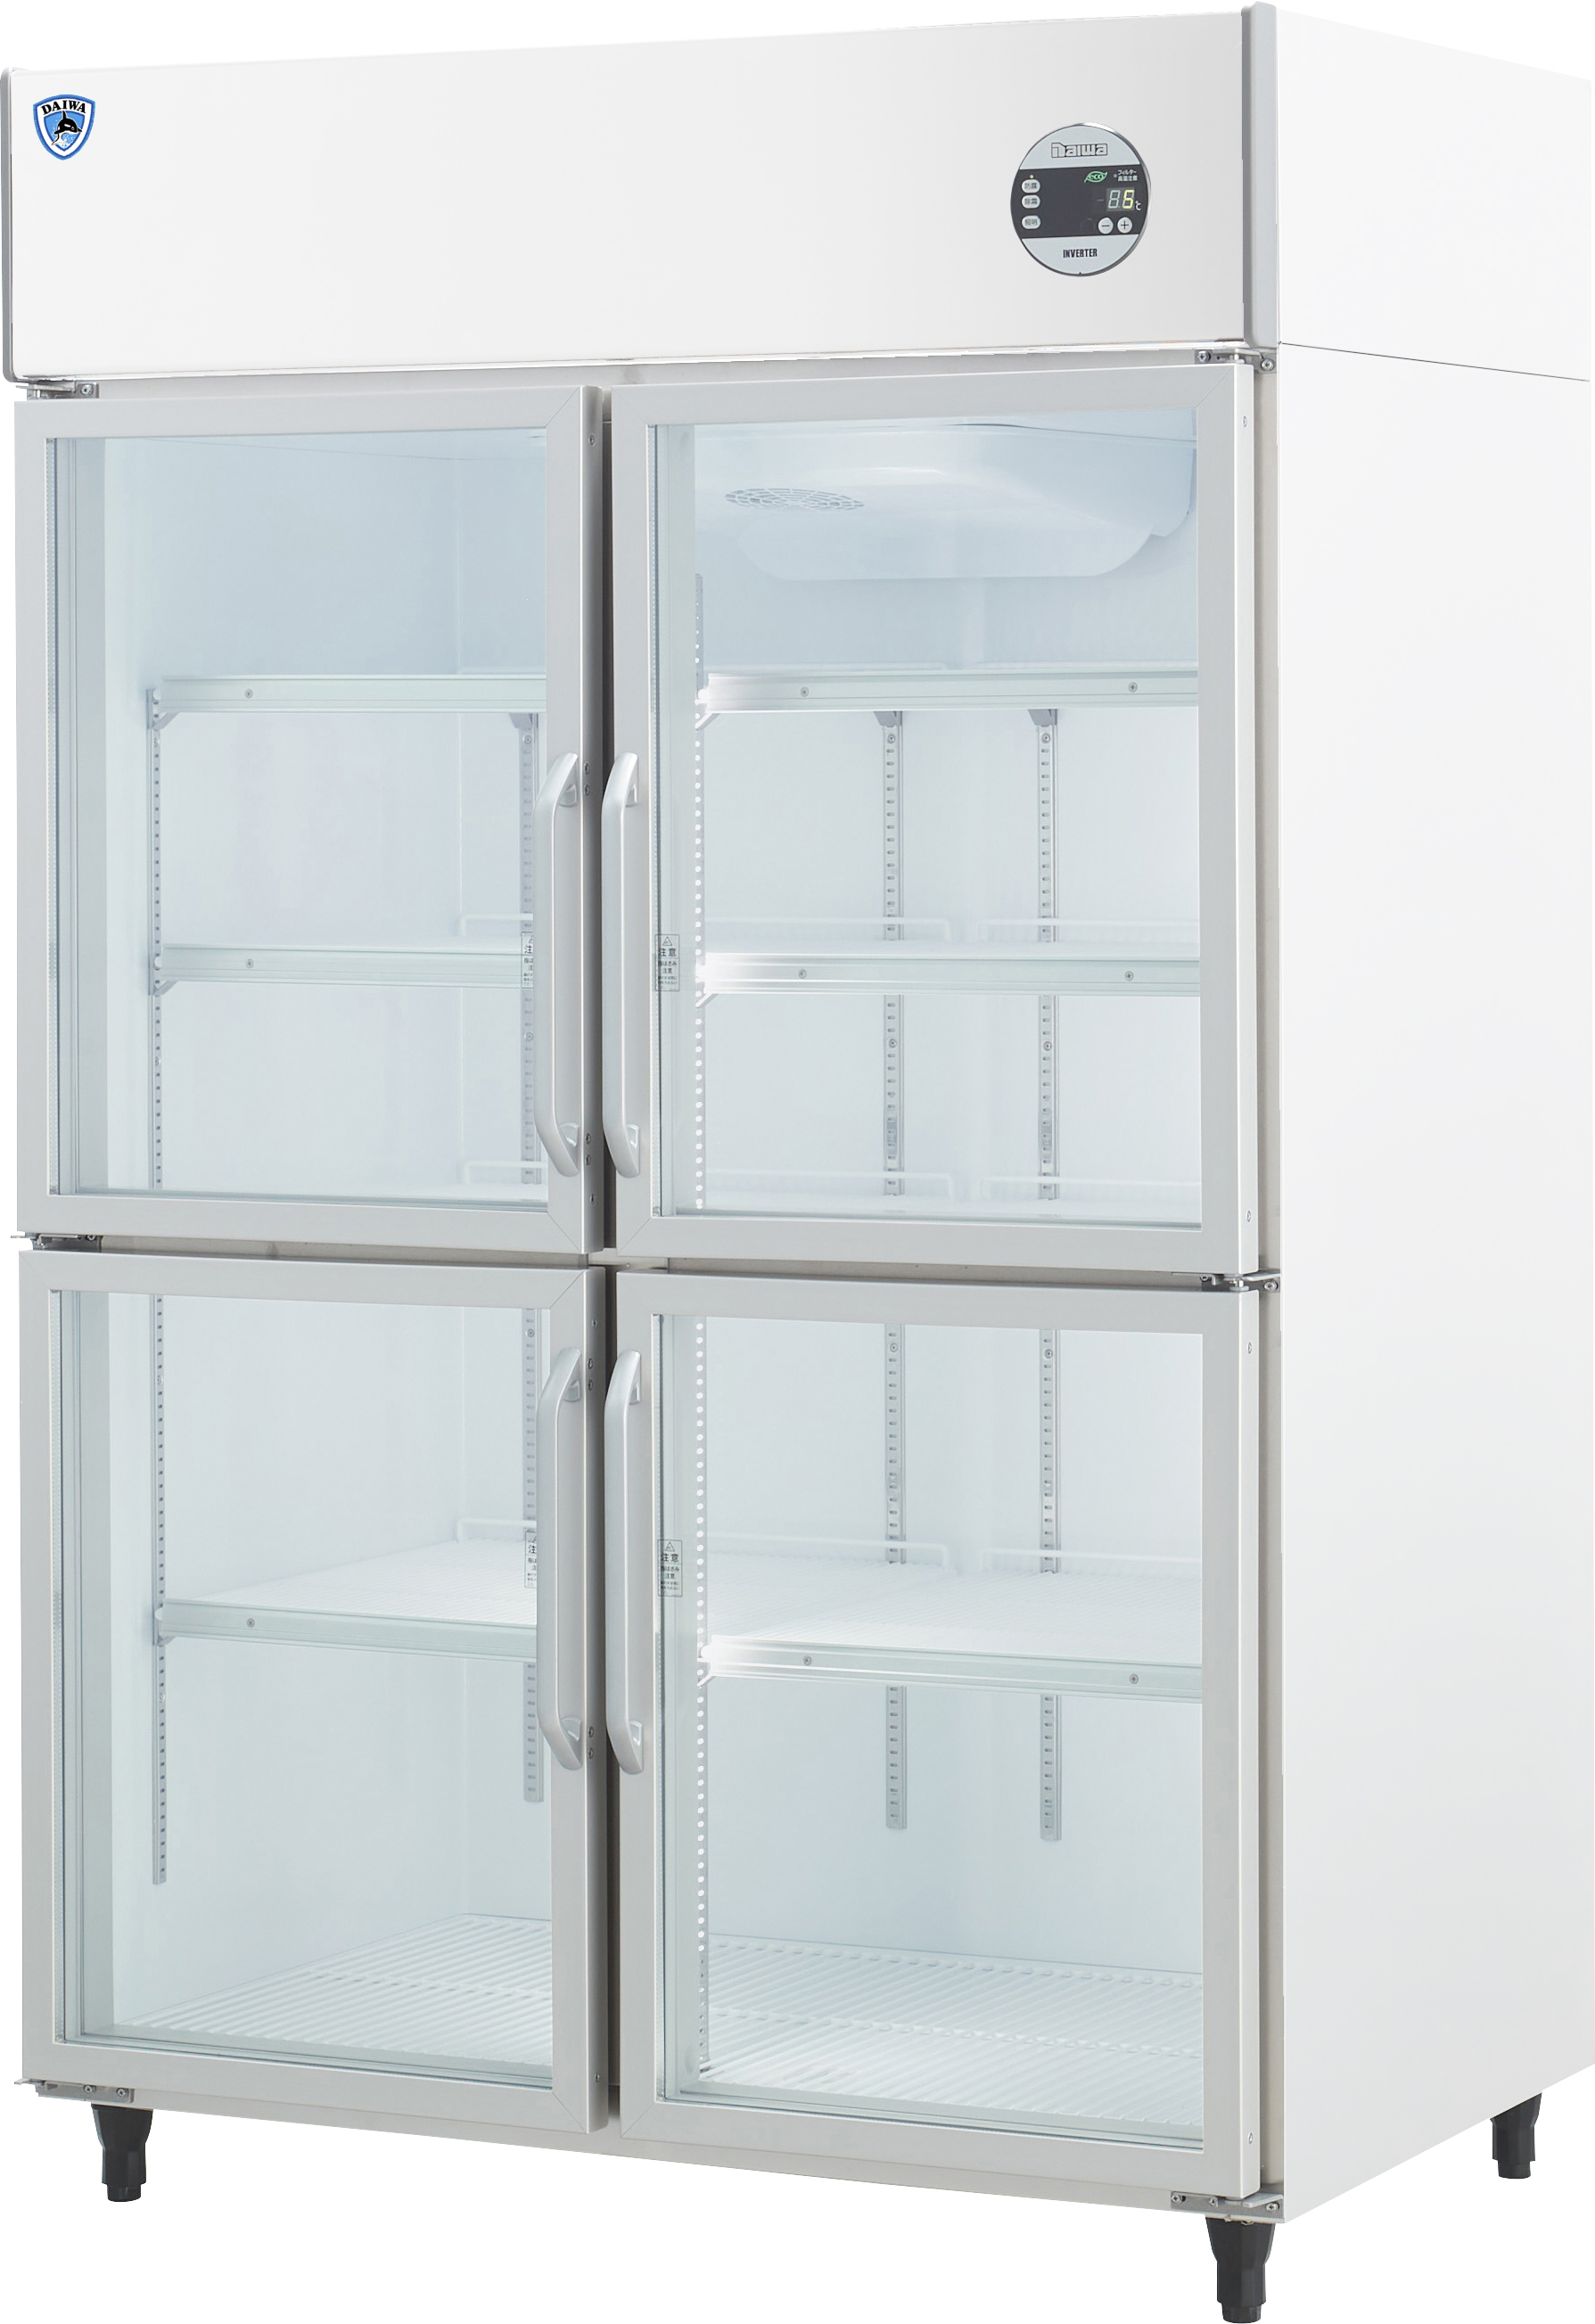 上置型]インバータ制御冷蔵ショーケース エコ蔵くん | 店舗用冷凍